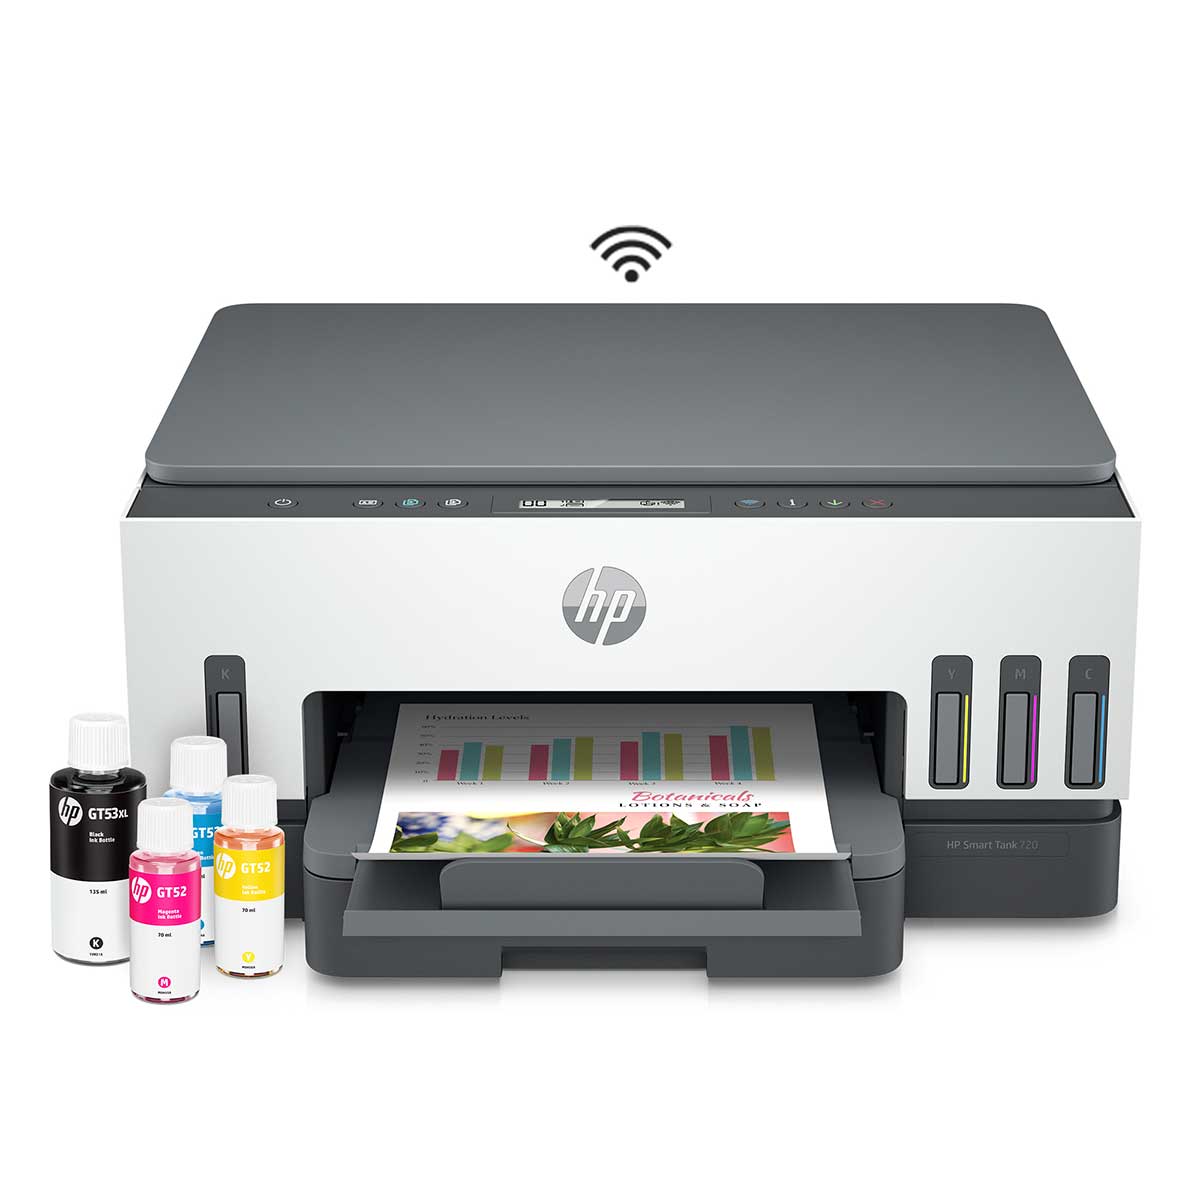 impressora-multifuncional-hp-smart-tank-724-tanque-de-tinta-colorida-scanner-duplex-wi-fi-usb-bluetooth-bivolt---2g9q2a-1.jpg